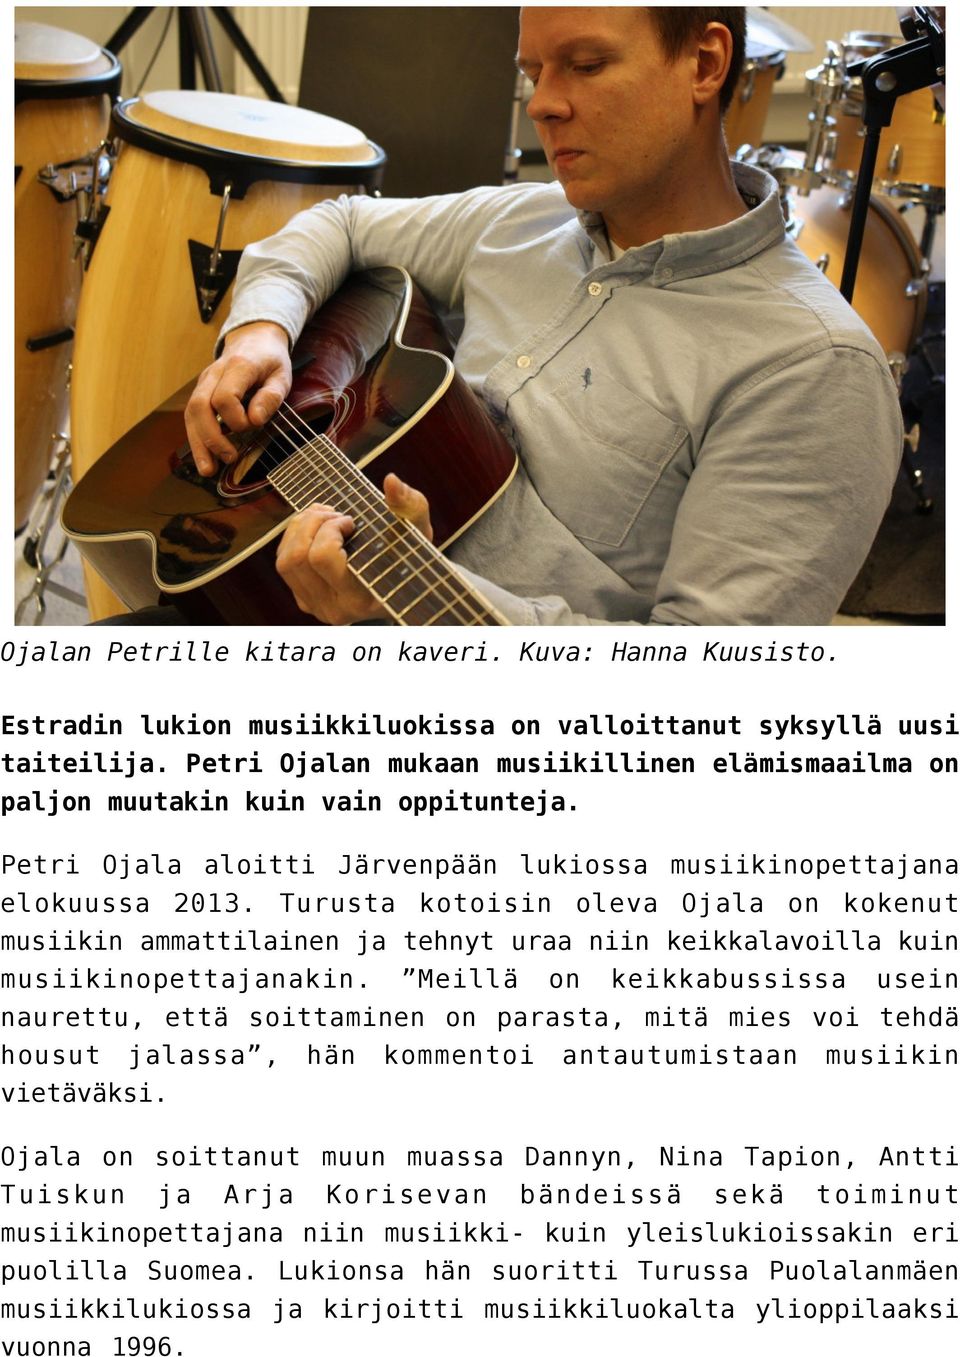 Turusta kotoisin oleva Ojala on kokenut musiikin ammattilainen ja tehnyt uraa niin keikkalavoilla kuin musiikinopettajanakin.